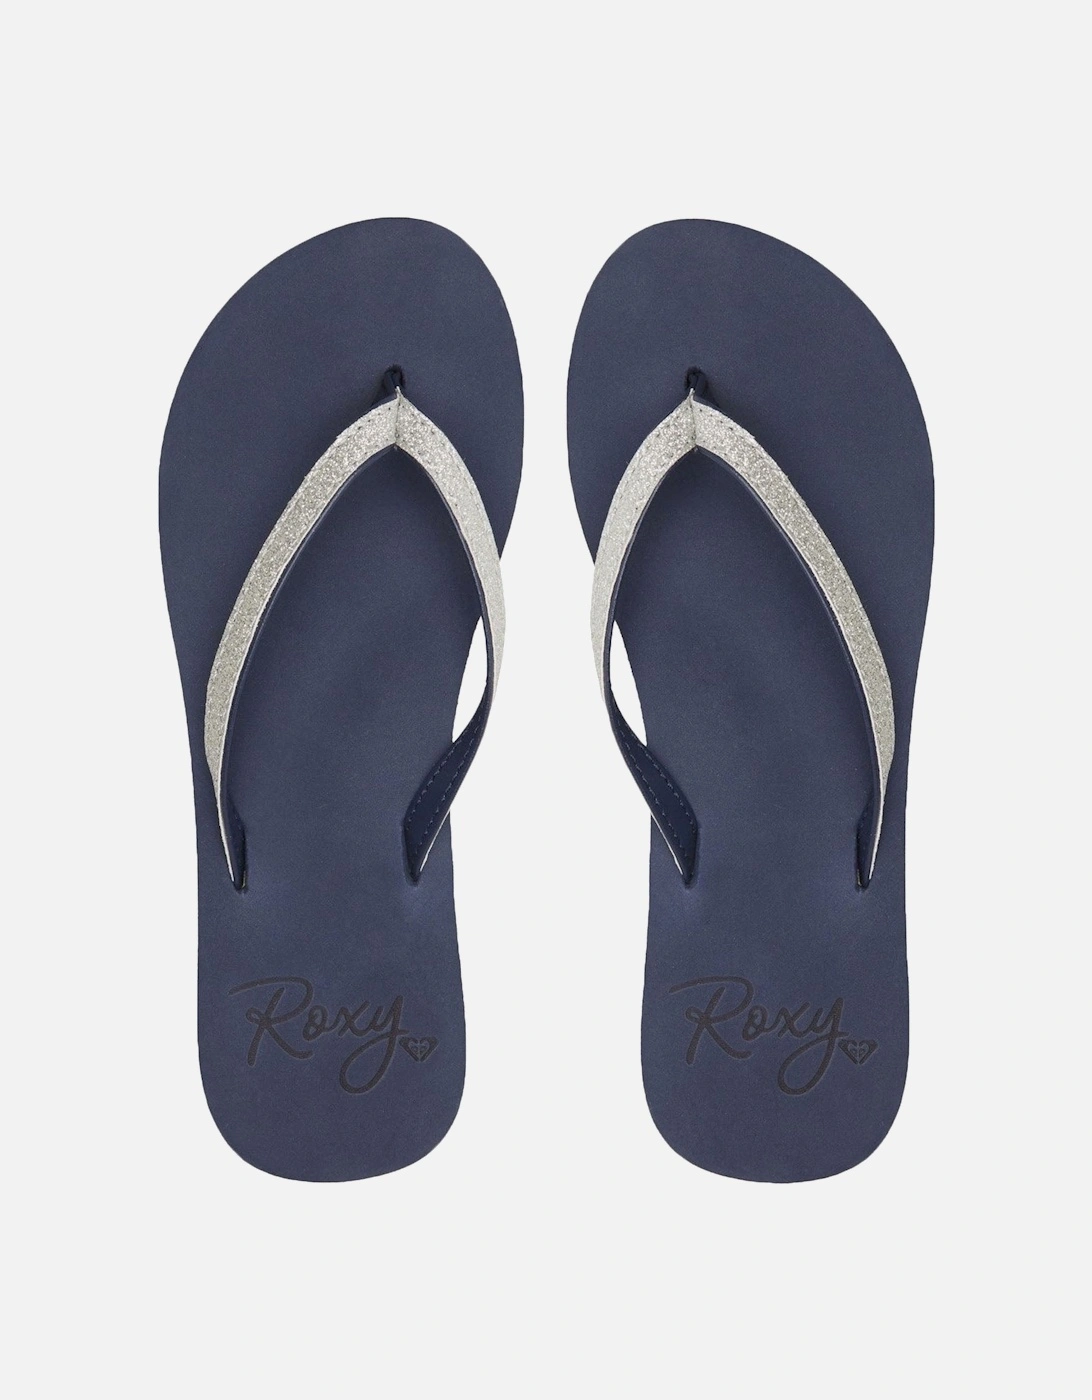 Roxy Womens Napili Summer Glitter Sandals Flip Flops